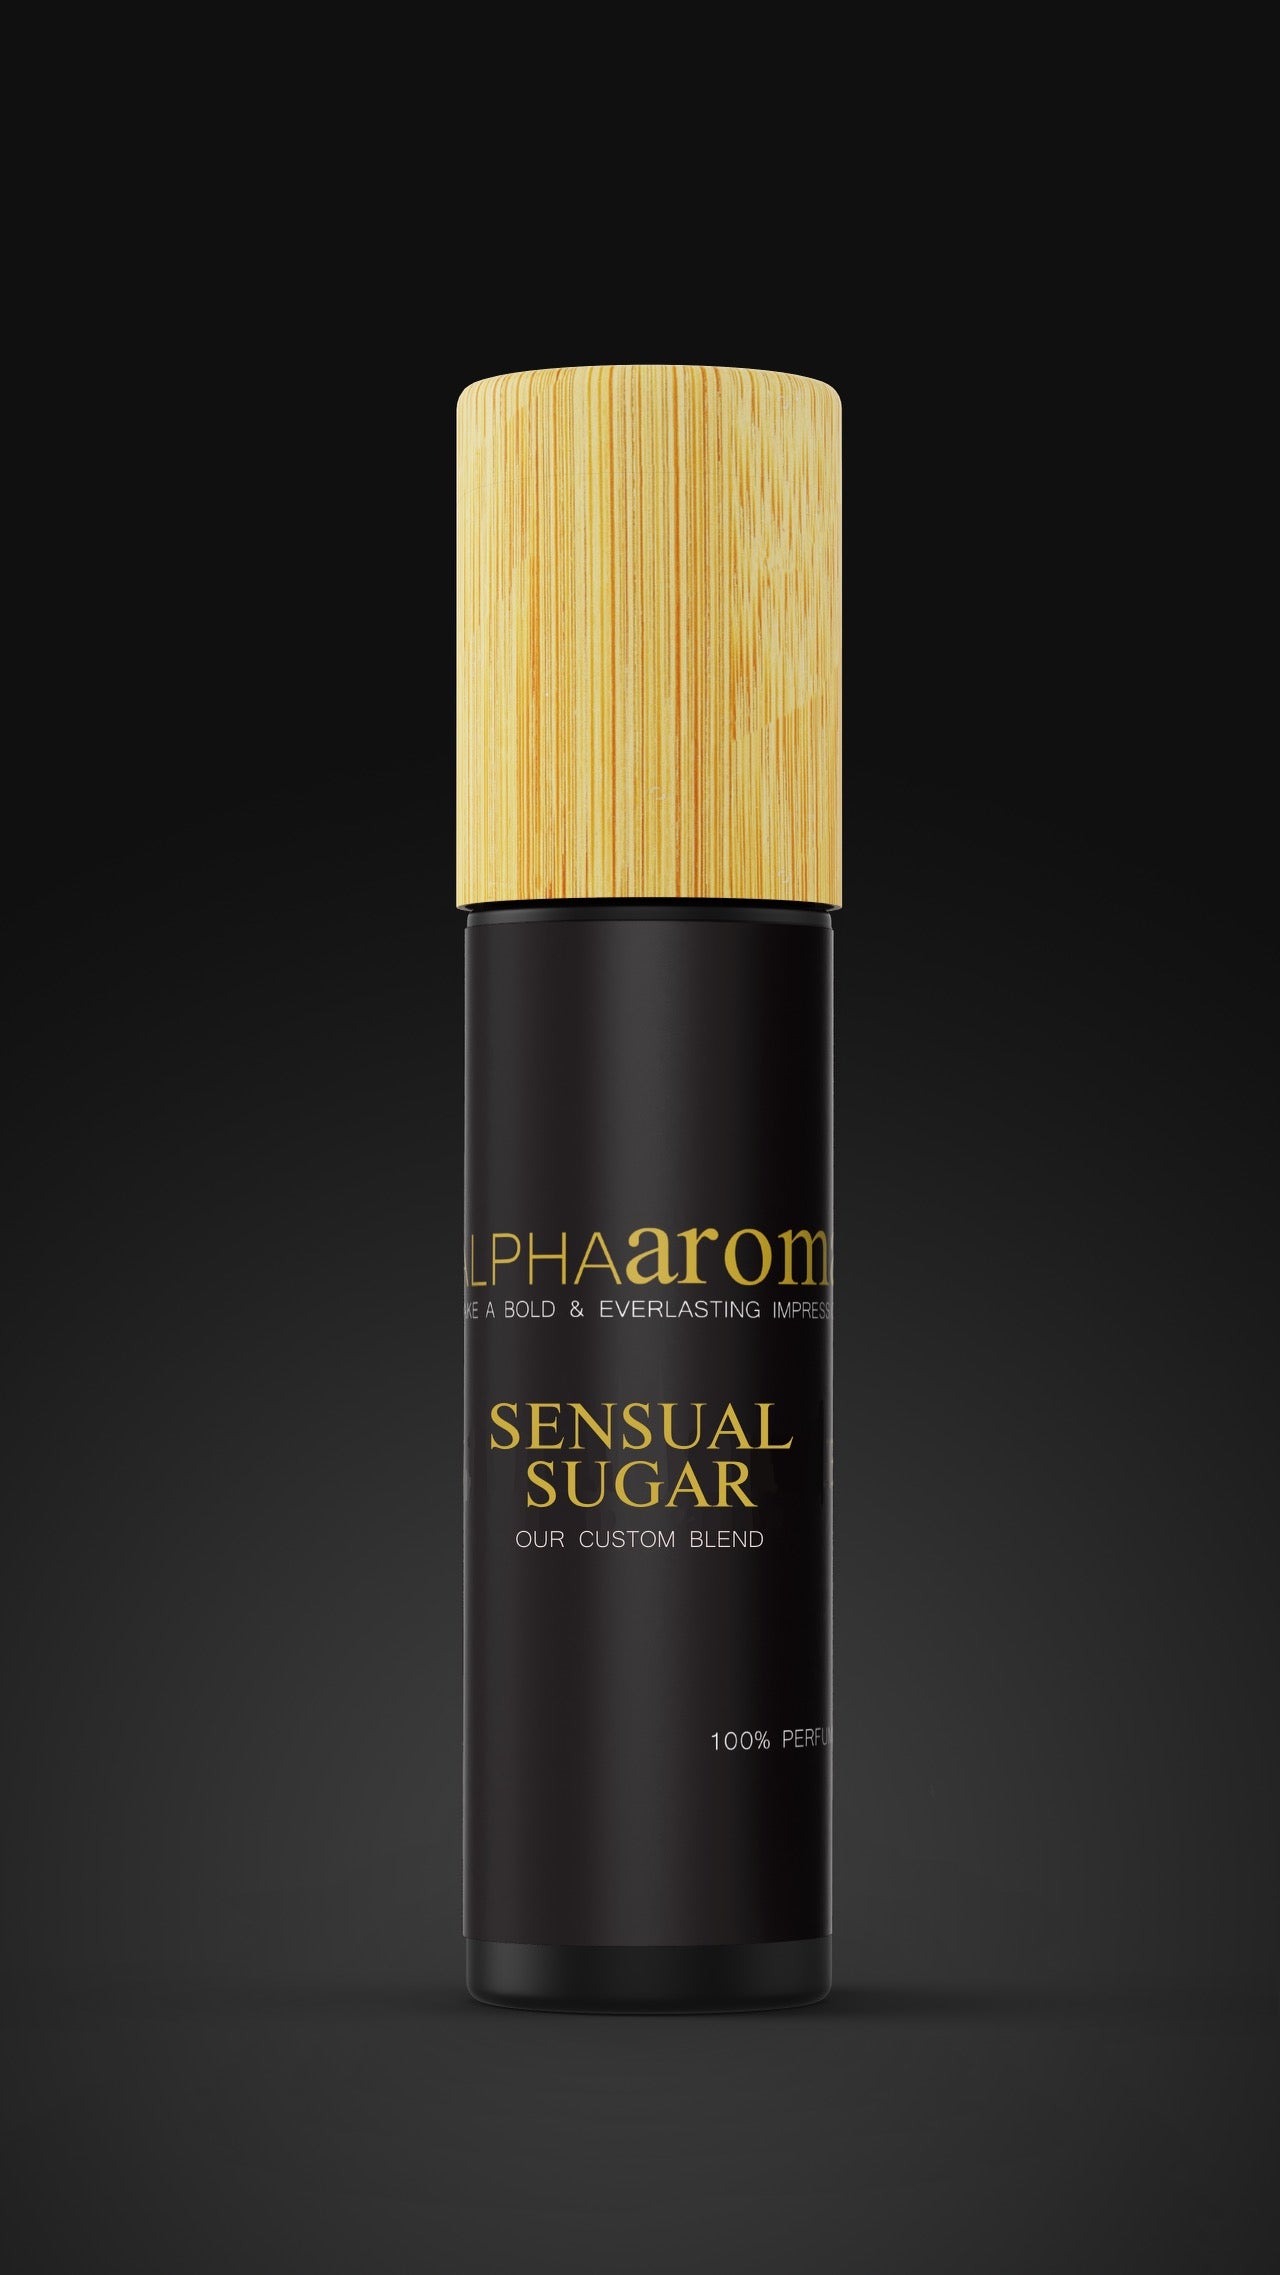 No. 24 - Sensual Sugar- An Original Custom Blend